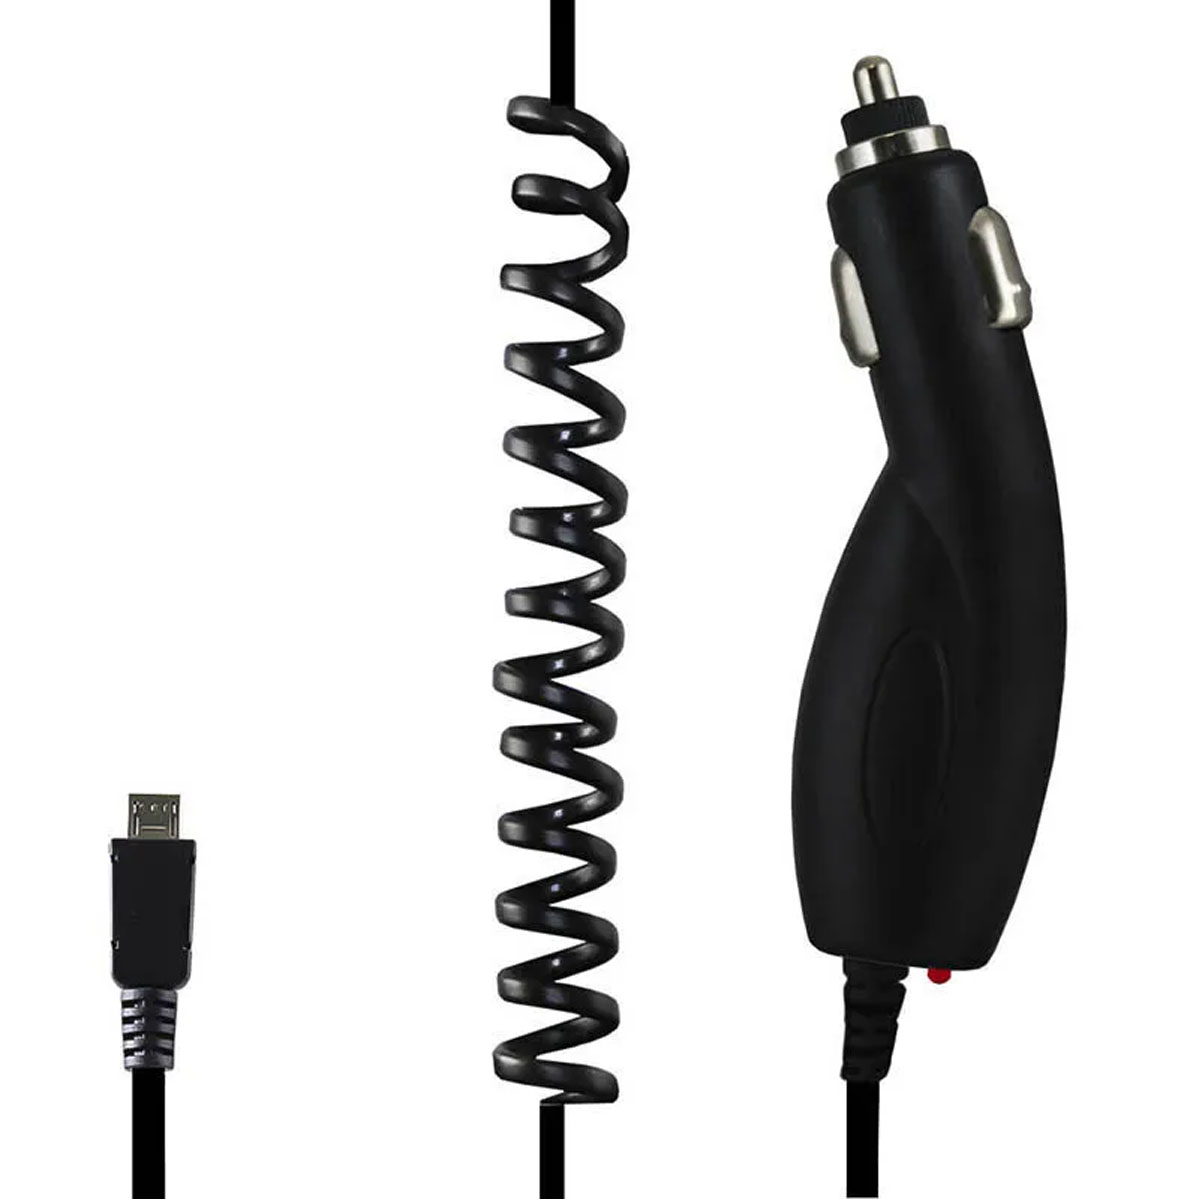 АЗУ (Автомобильное зарядное устройство) STARK CCST-01 с кабелем Micro USB, 1A, длина 1.5 метра, цвет черный